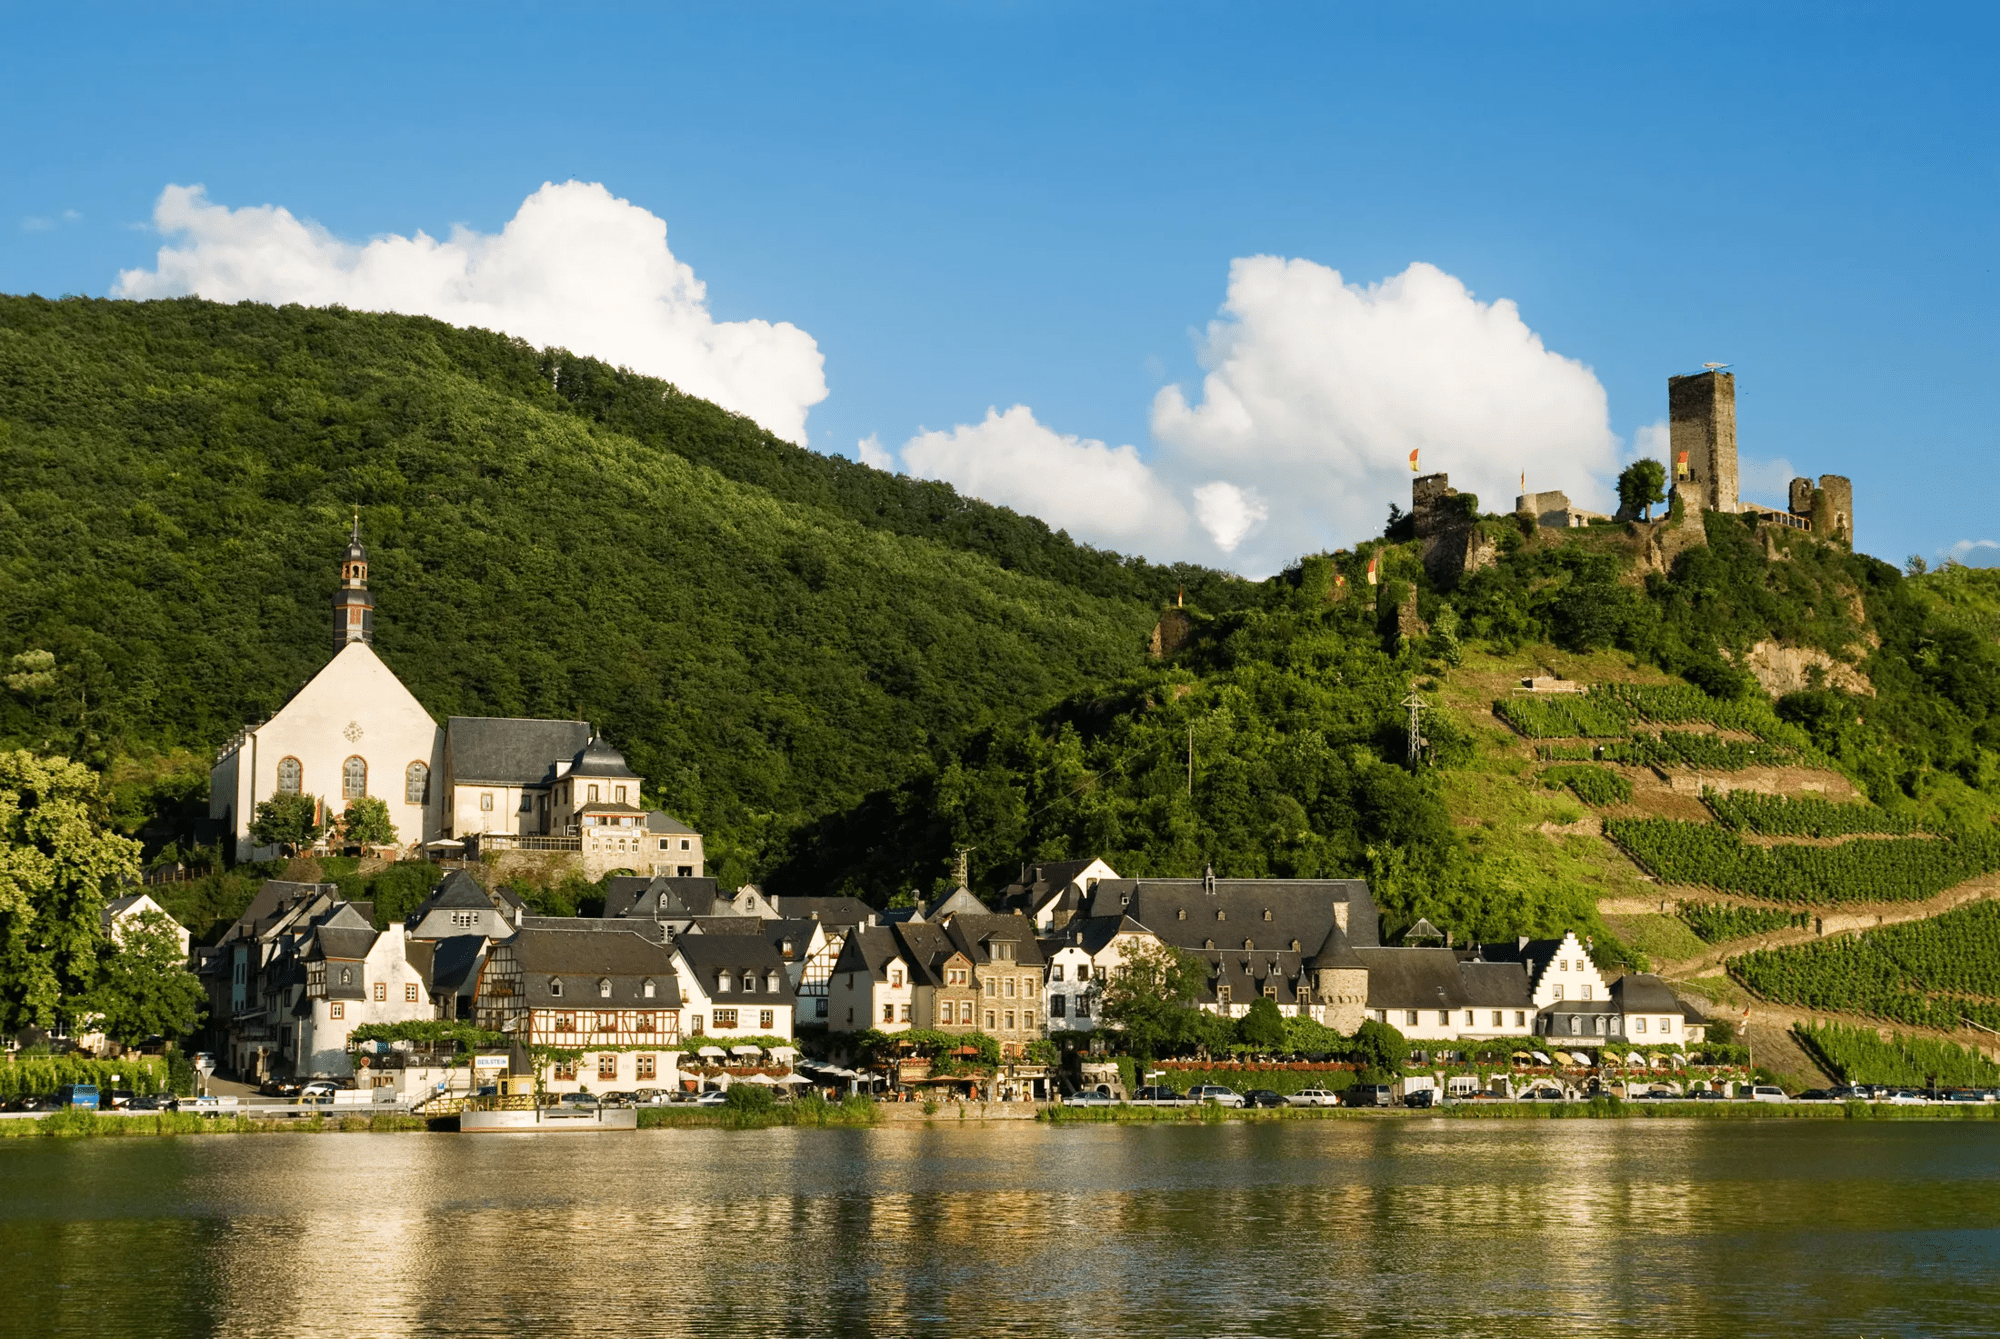 7-daagse rondreis Duitsland wijn van de Moezel en de Rijn - 